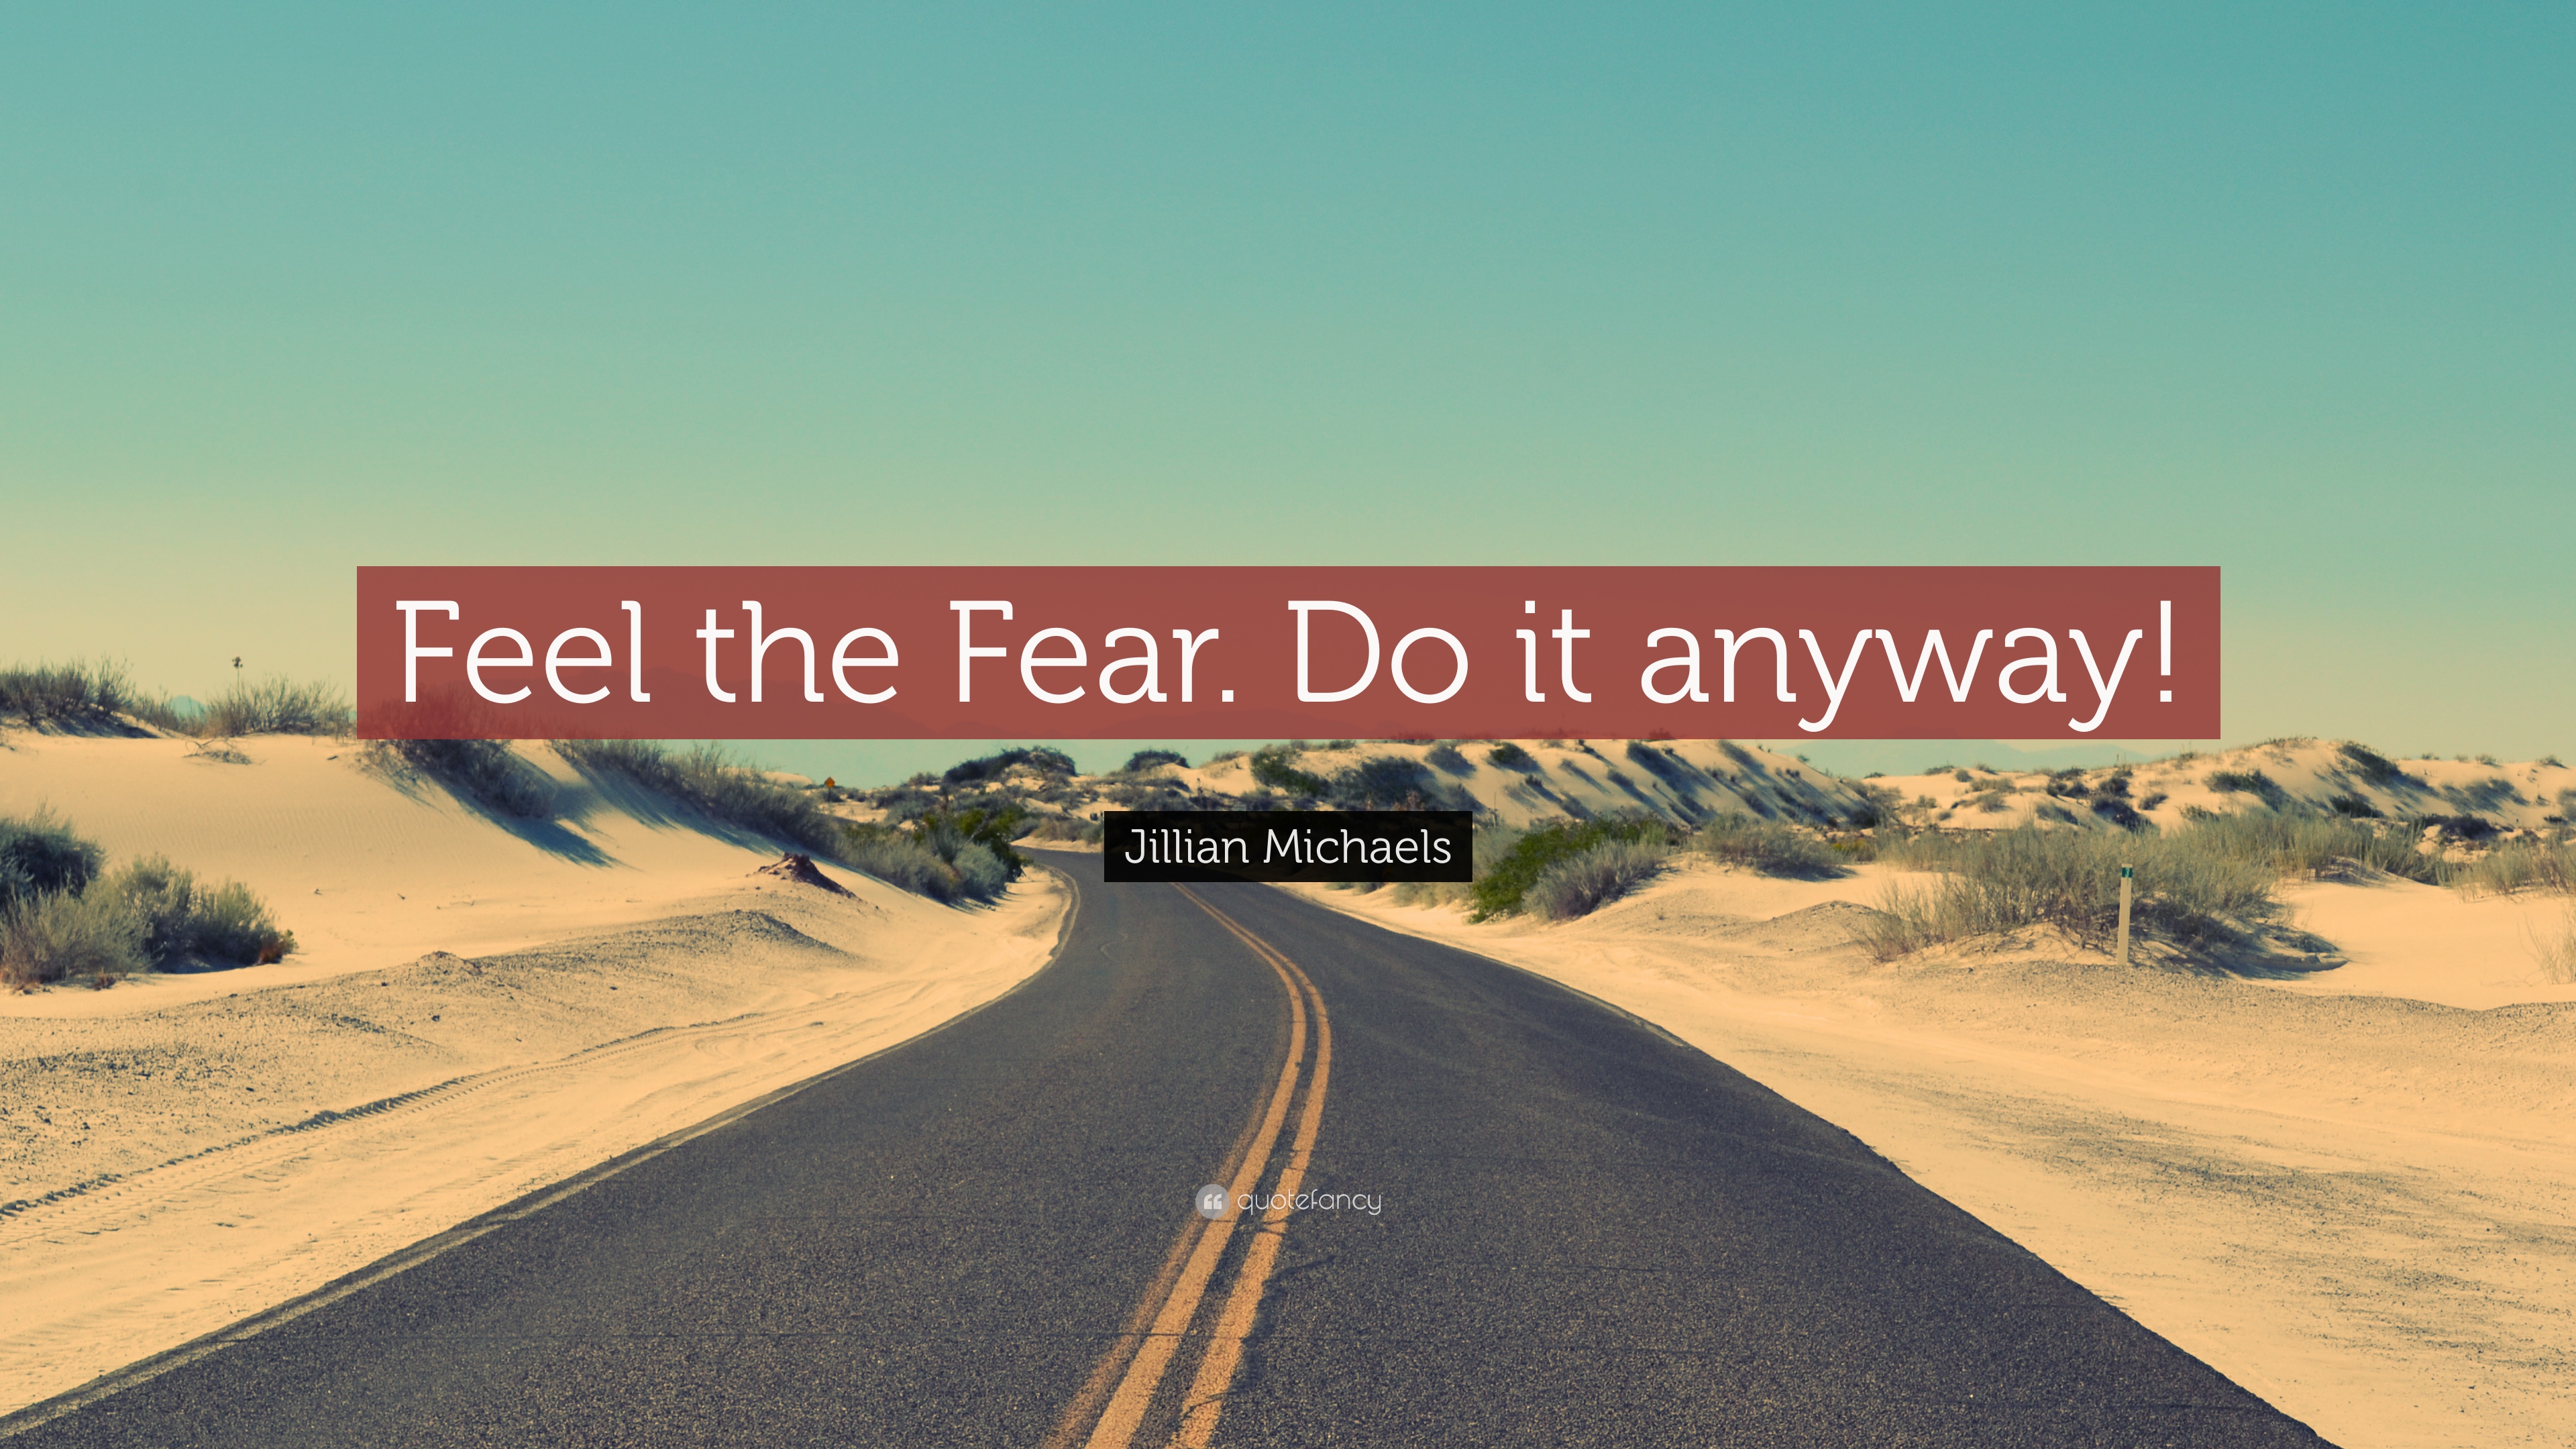 Jillian Michaels Quote: “Feel the Fear. Do it anyway!” 12